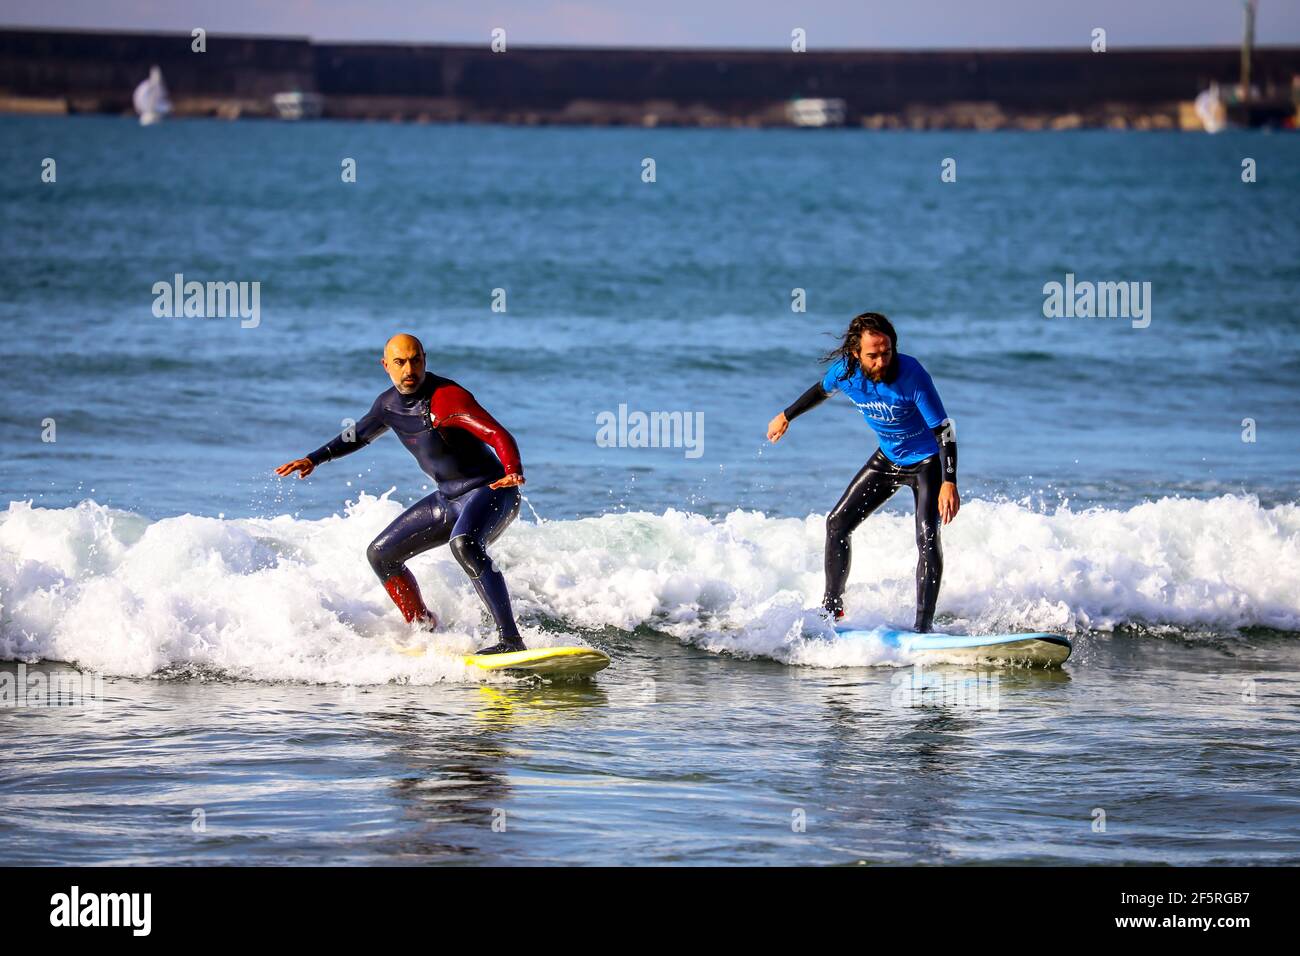 09/01/2021:Freizeitwassersport: Zwei Surfer fangen Wellen Stockfoto